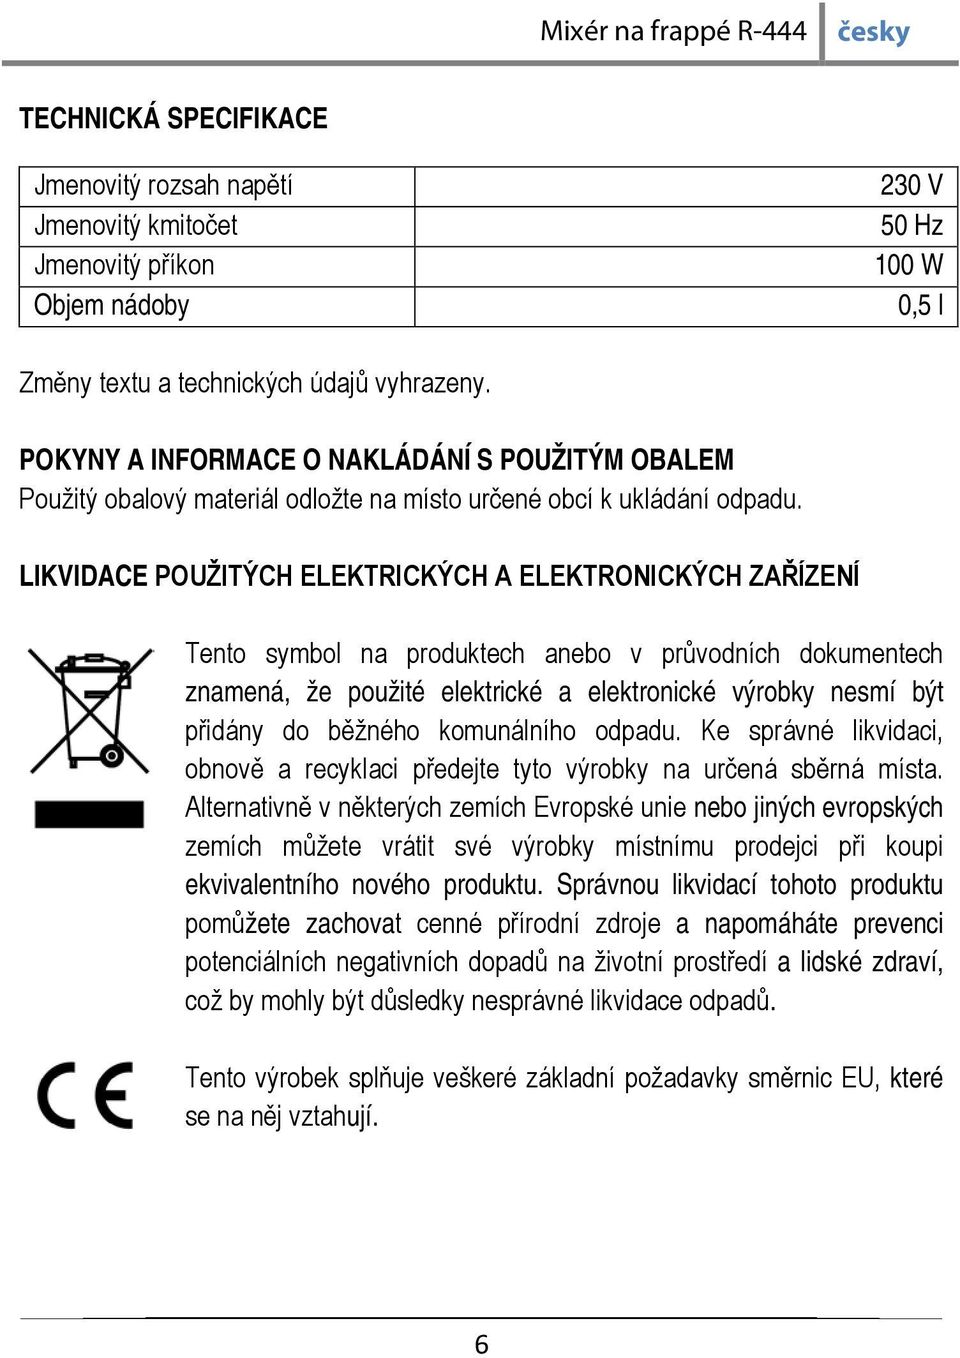 LIKVIDACE POUŽITÝCH ELEKTRICKÝCH A ELEKTRONICKÝCH ZAŘÍZENÍ Tento symbol na produktech anebo v průvodních dokumentech znamená, že použité elektrické a elektronické výrobky nesmí být přidány do běžného